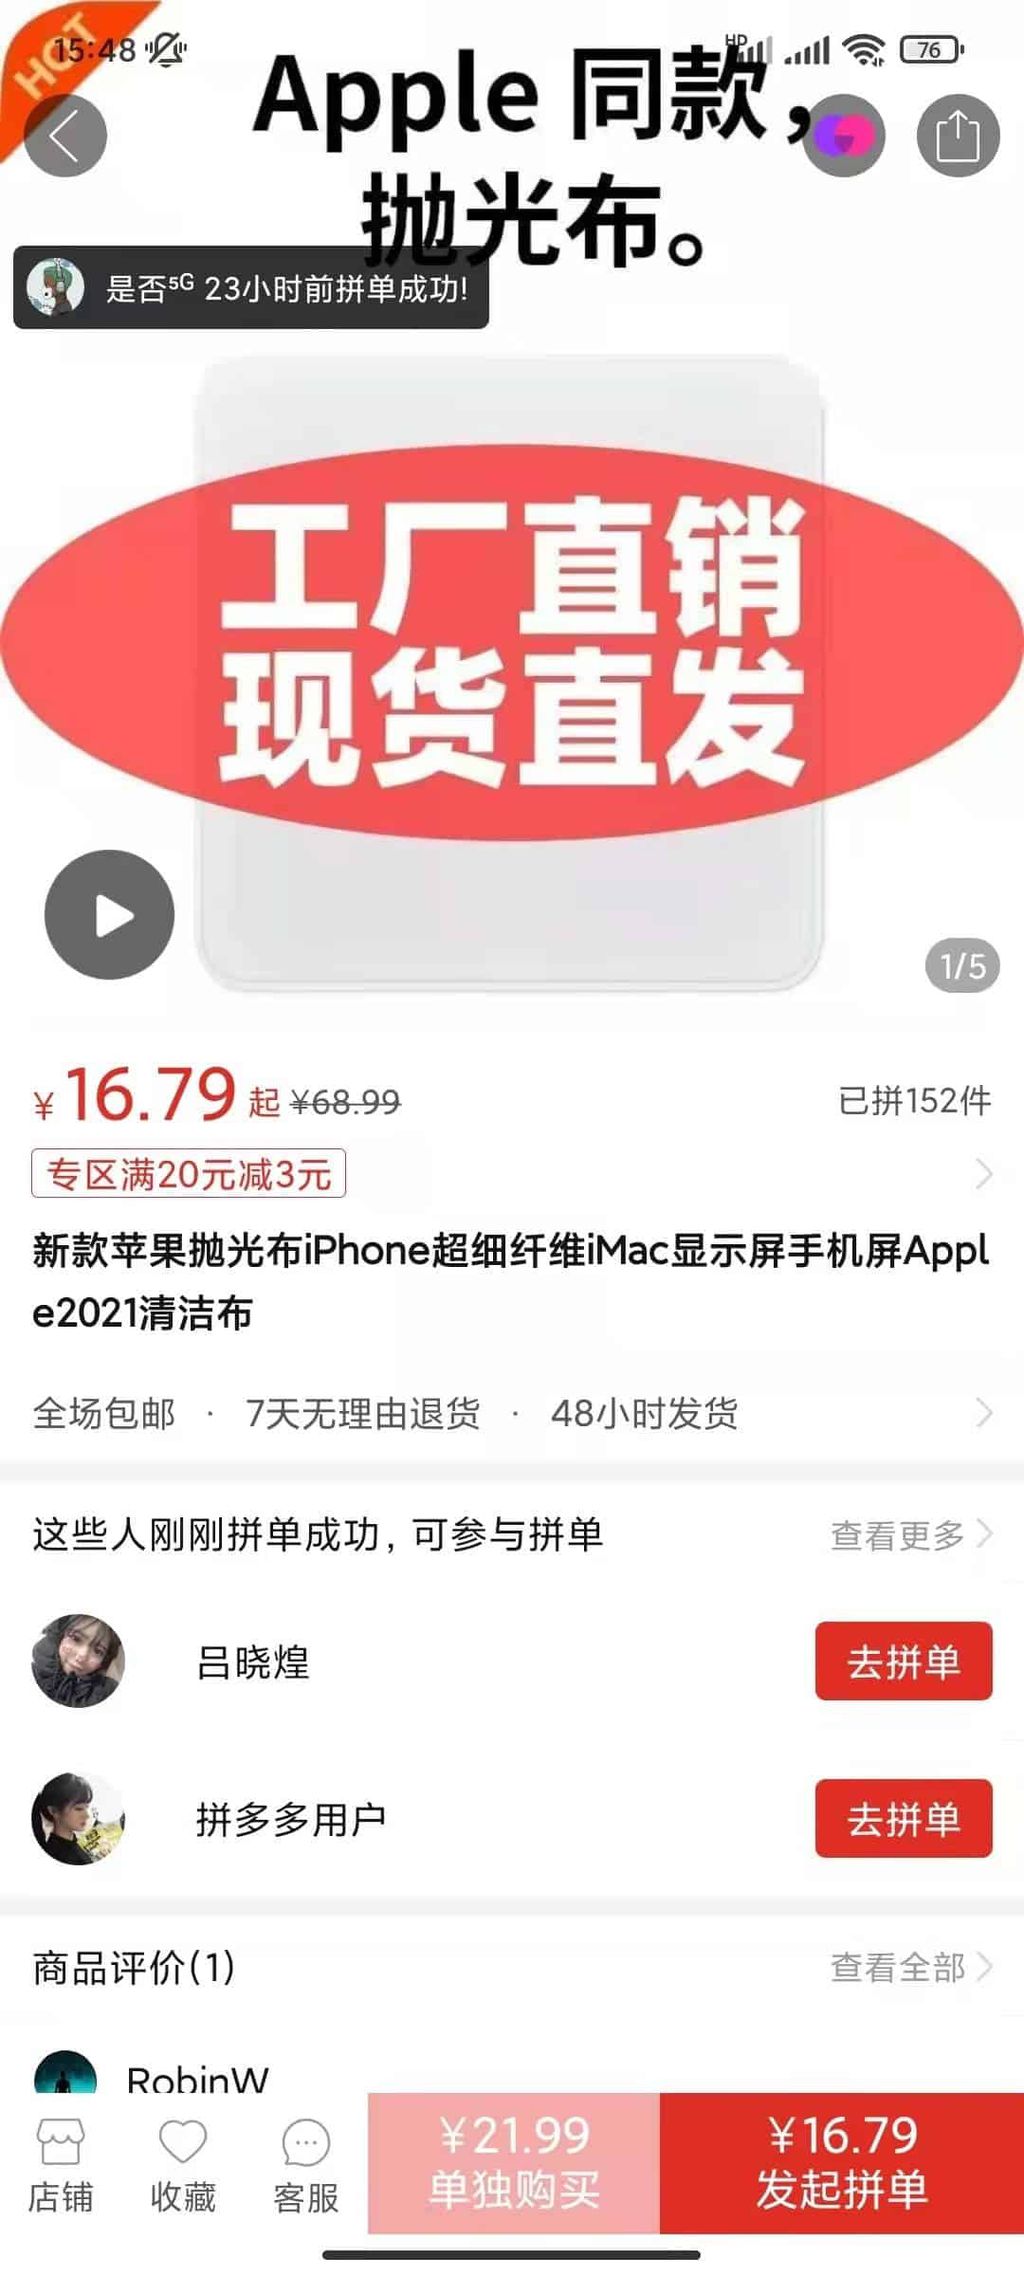 O anúncio da varejista chinesa garante se tratar do mesmo pano oficial, vindo de fábrica sem o logo da Apple (Imagem: Reprodução/Gizchina)